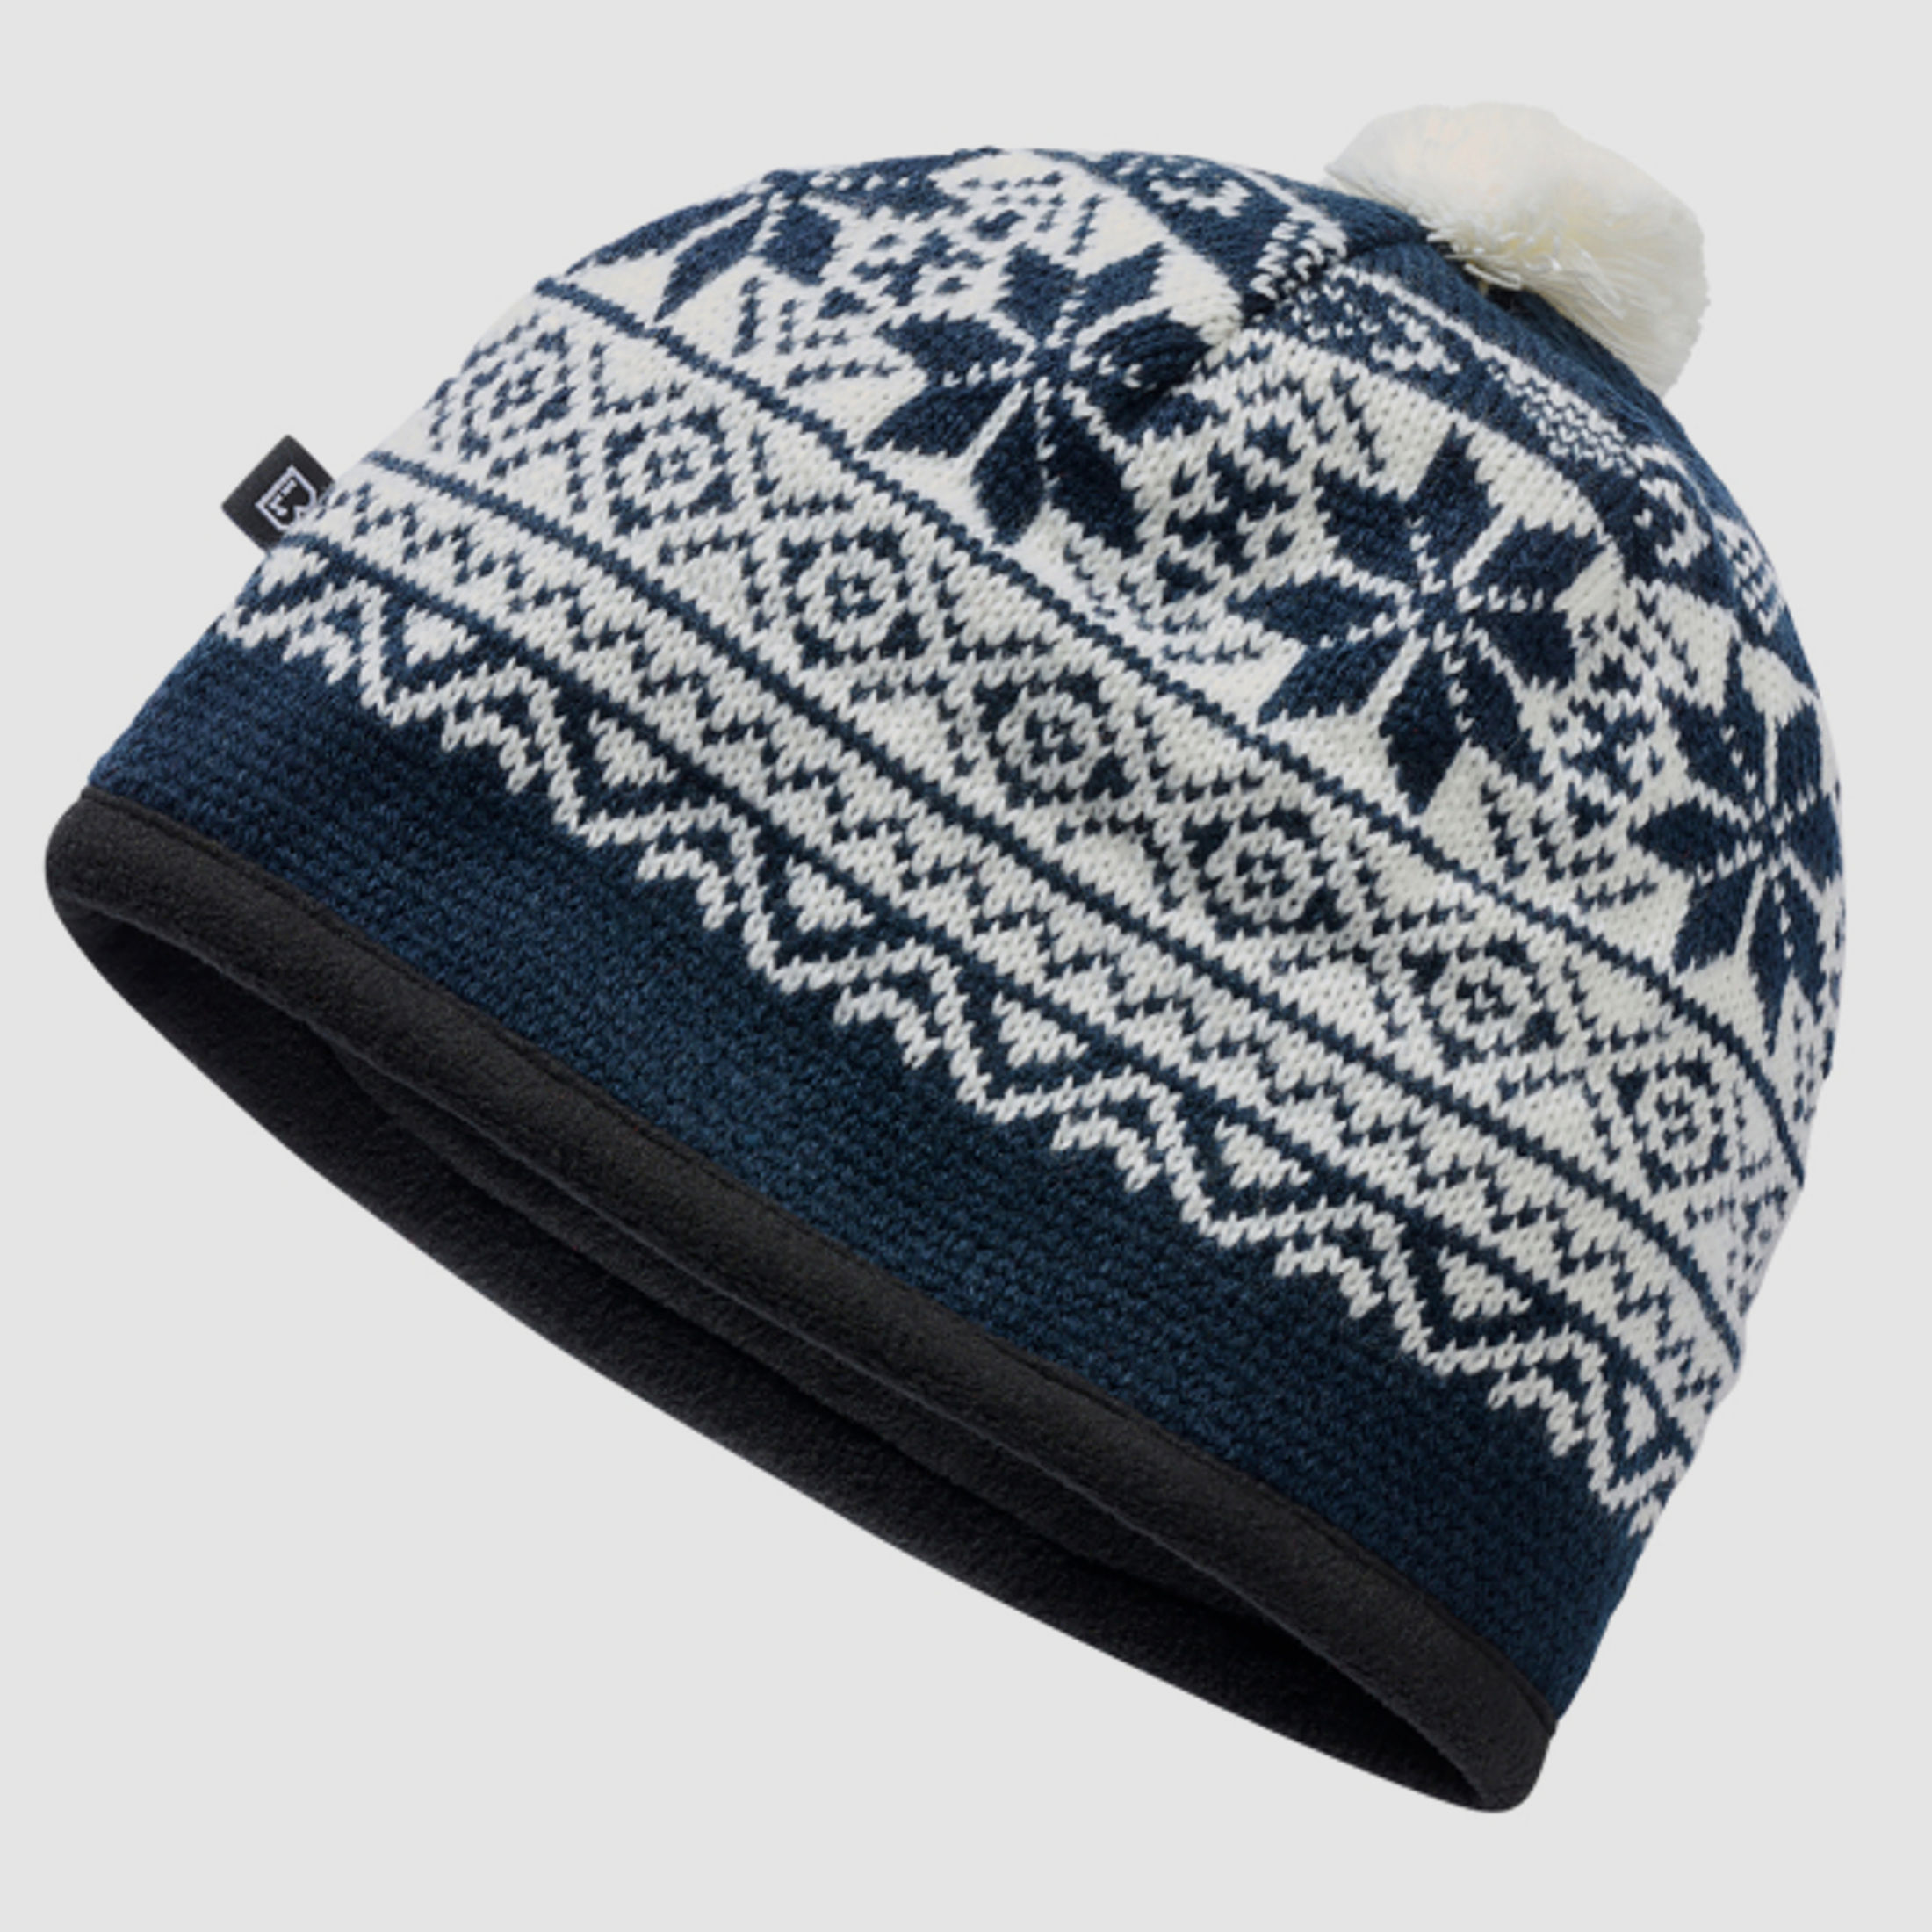 Wintermütze / Snow Cap von Brandit - Dunkelblau - Unigröße - skandinavisches Muster - Pudelmütze